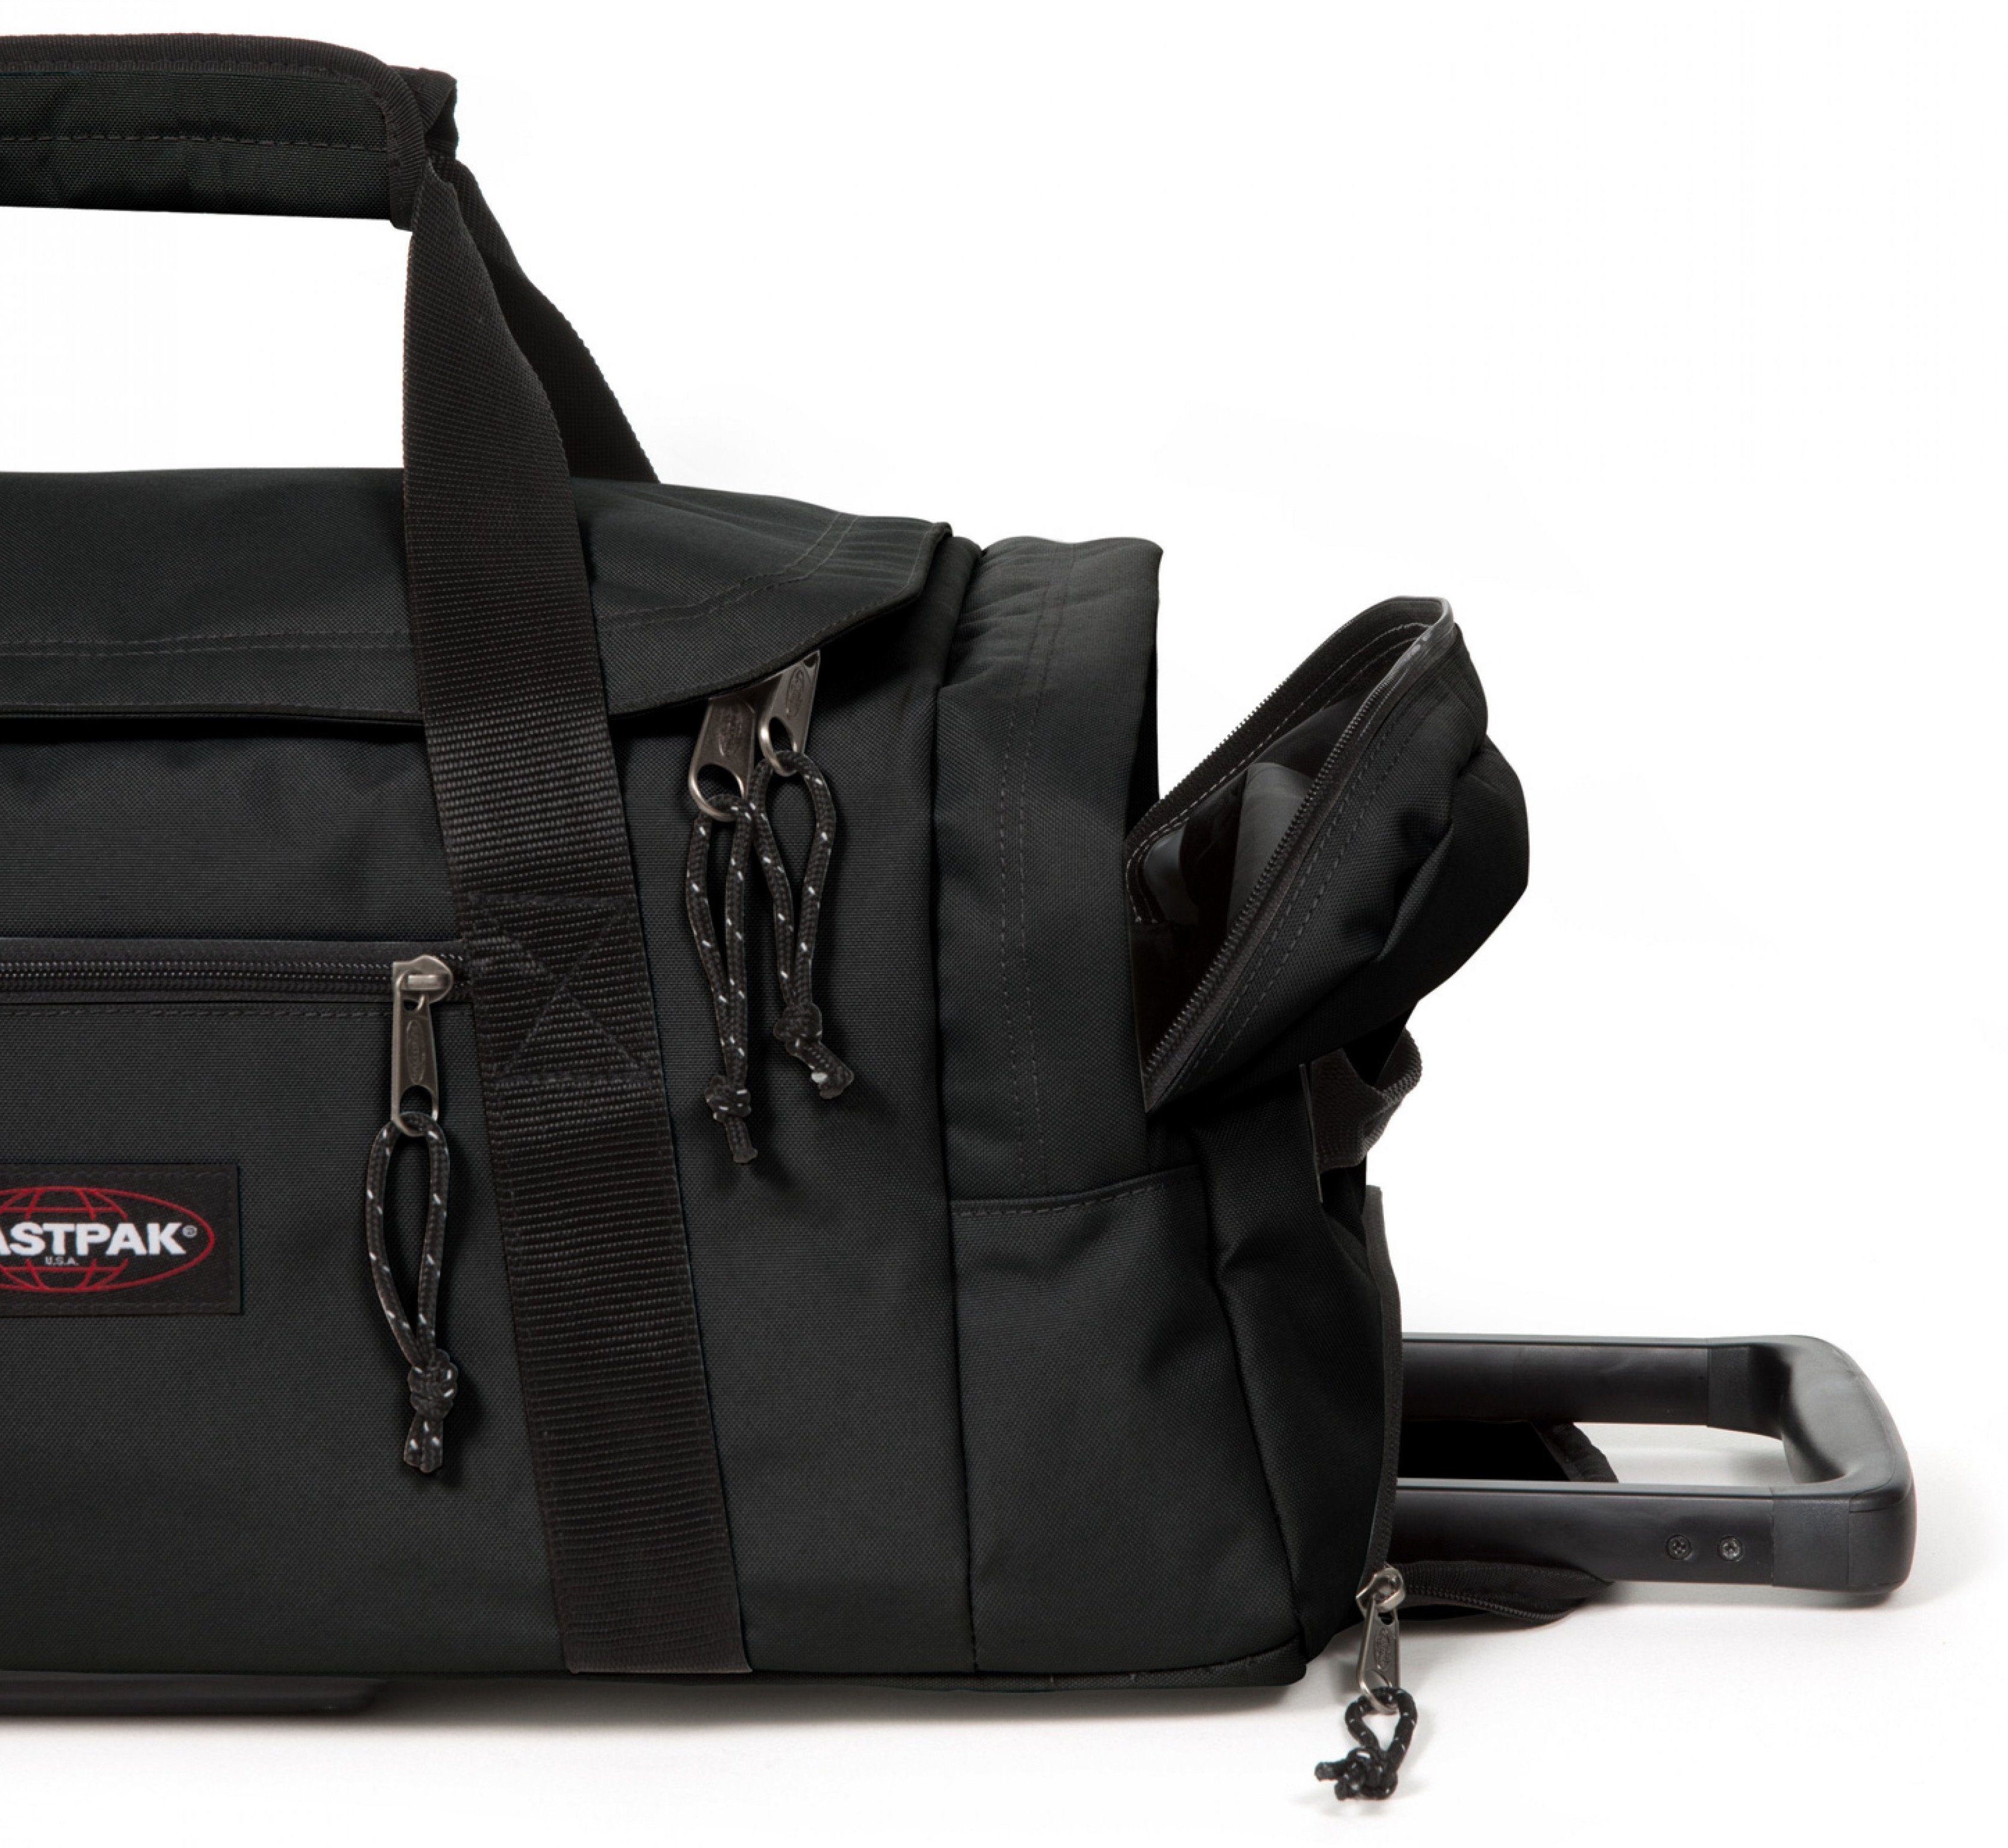 Eastpak Weichgepäck-Trolley Leatherface Platz black S 2 Rollen, mit +, ausreichend